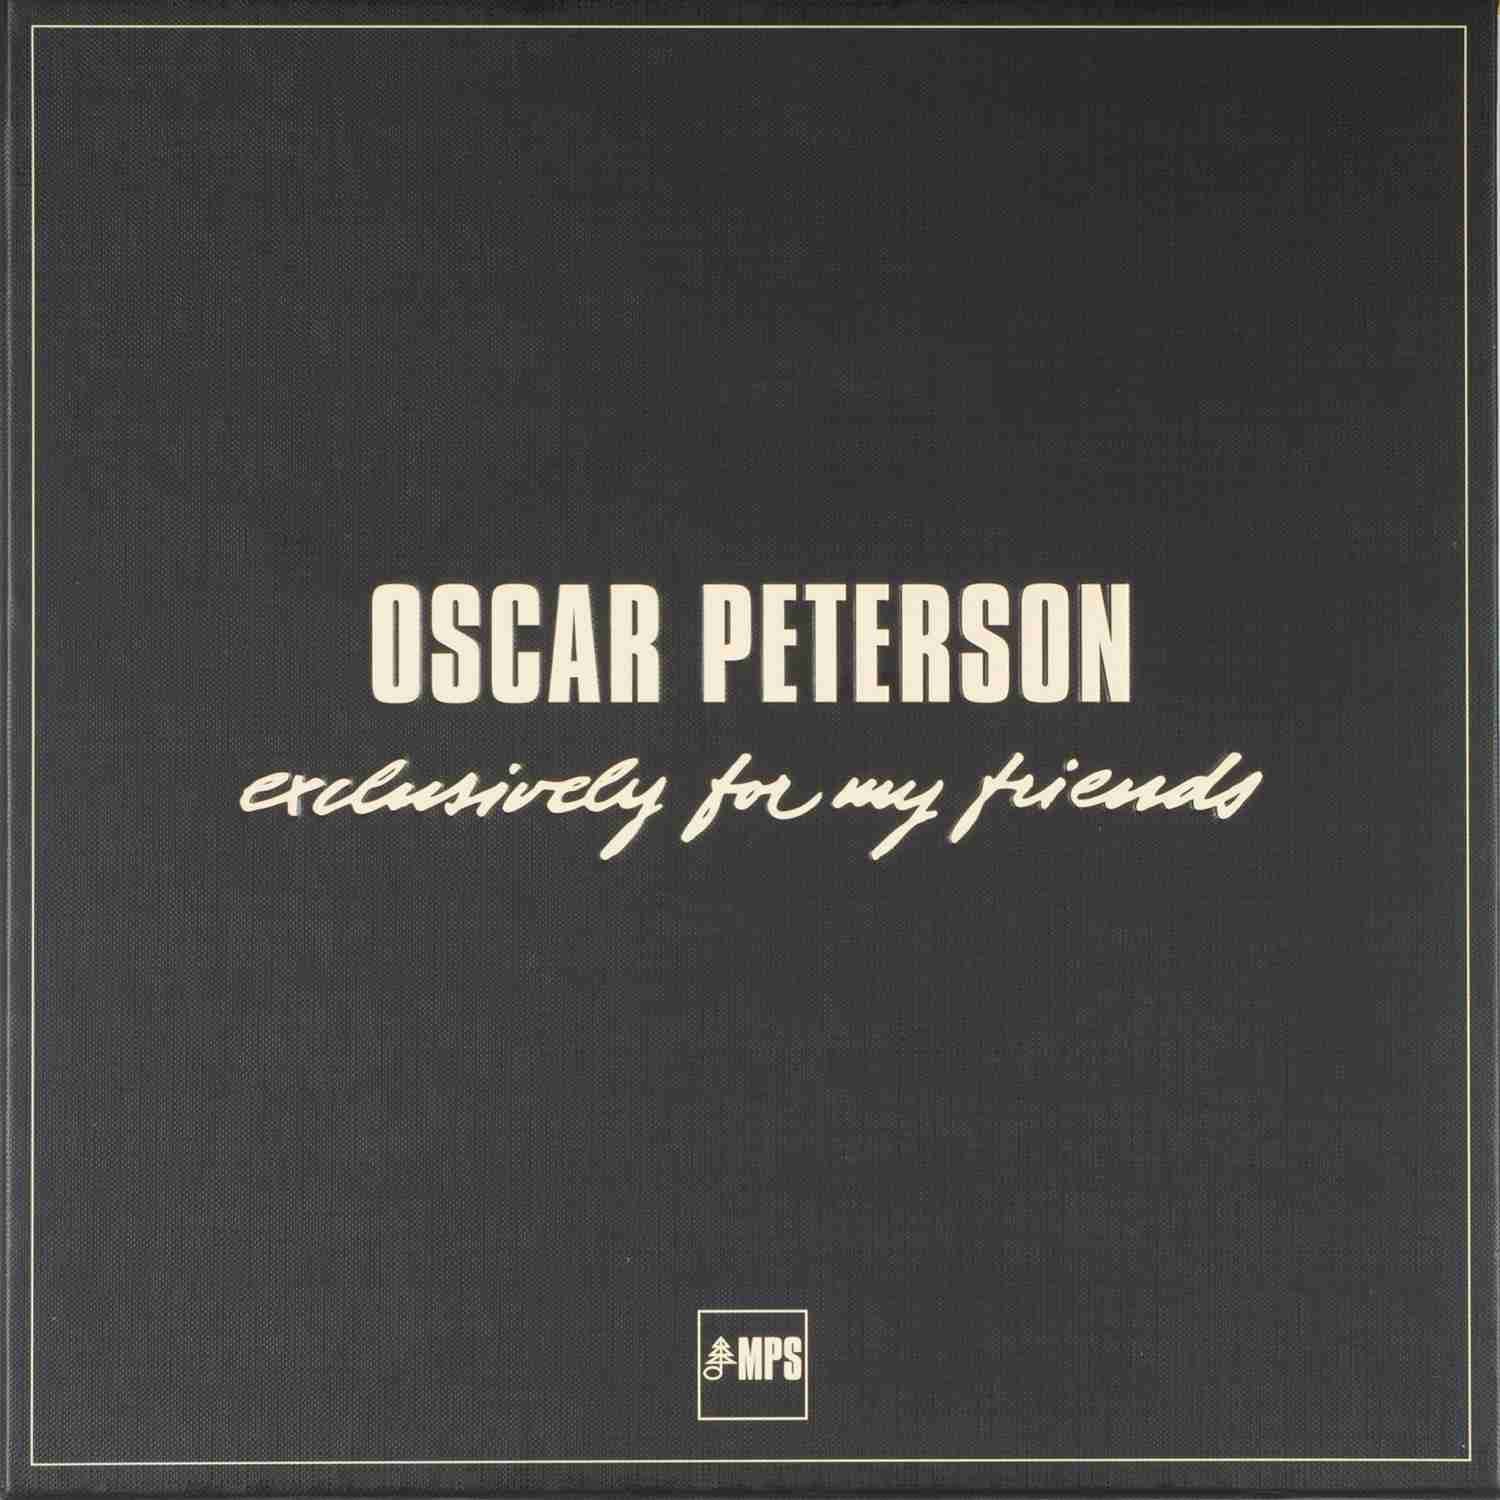 Schallplatte Oscar Peterson - Exclusively for My Friends (Edel Triple A Reissue Series) im Test, Bild 1